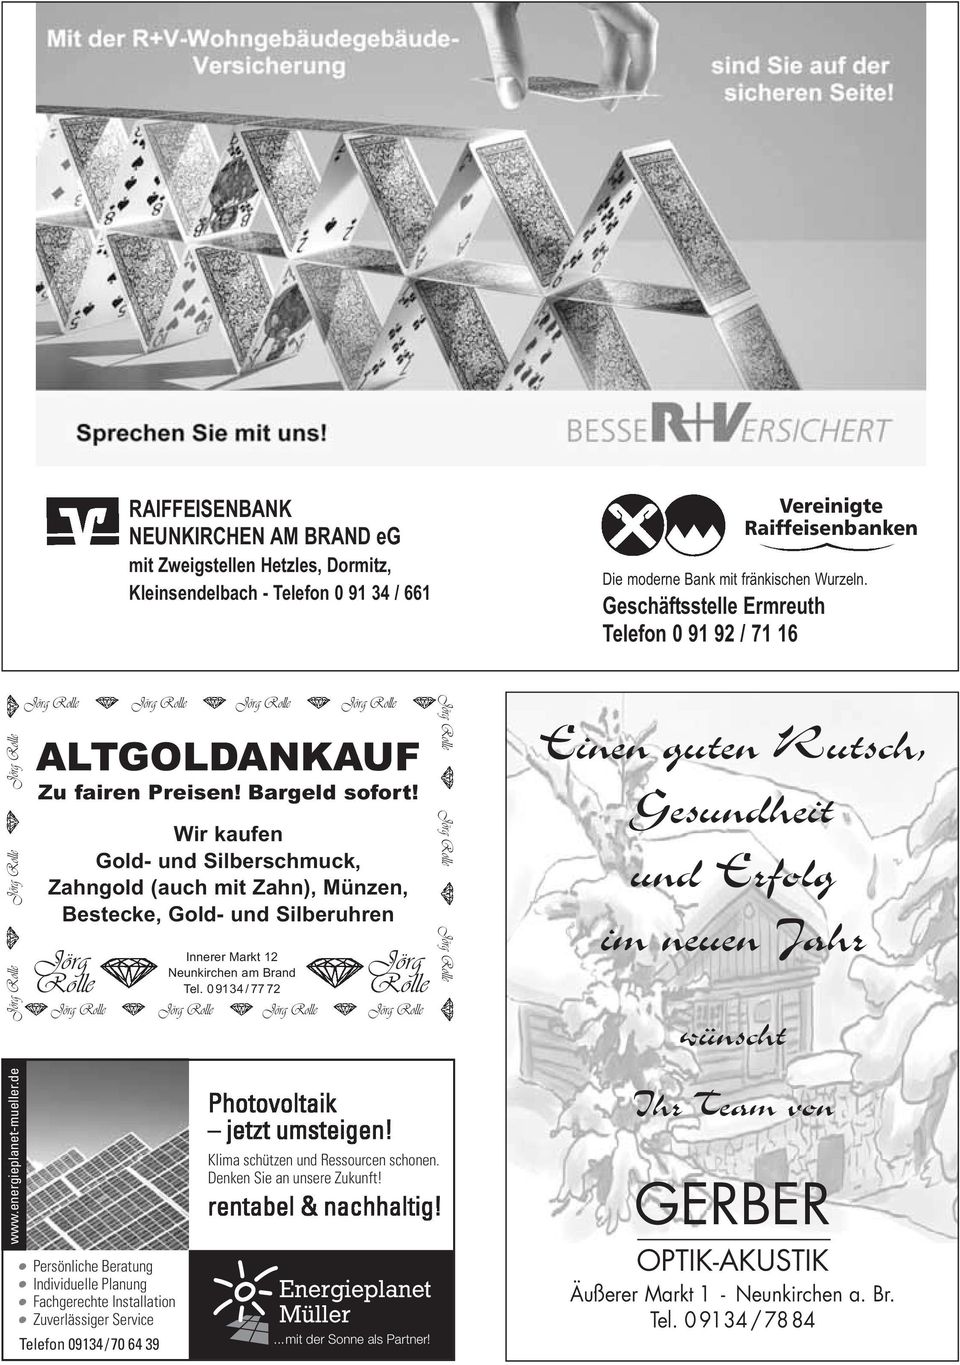 Bargeld sofort! Wir kaufen Gold- und Silberschmuck, Zahngold (auch mit Zahn), Münzen, Bestecke, Gold- und Silberuhren Jörg Rolle Jörg Rolle Innerer Markt 12 Neunkirchen am Brand Tel.